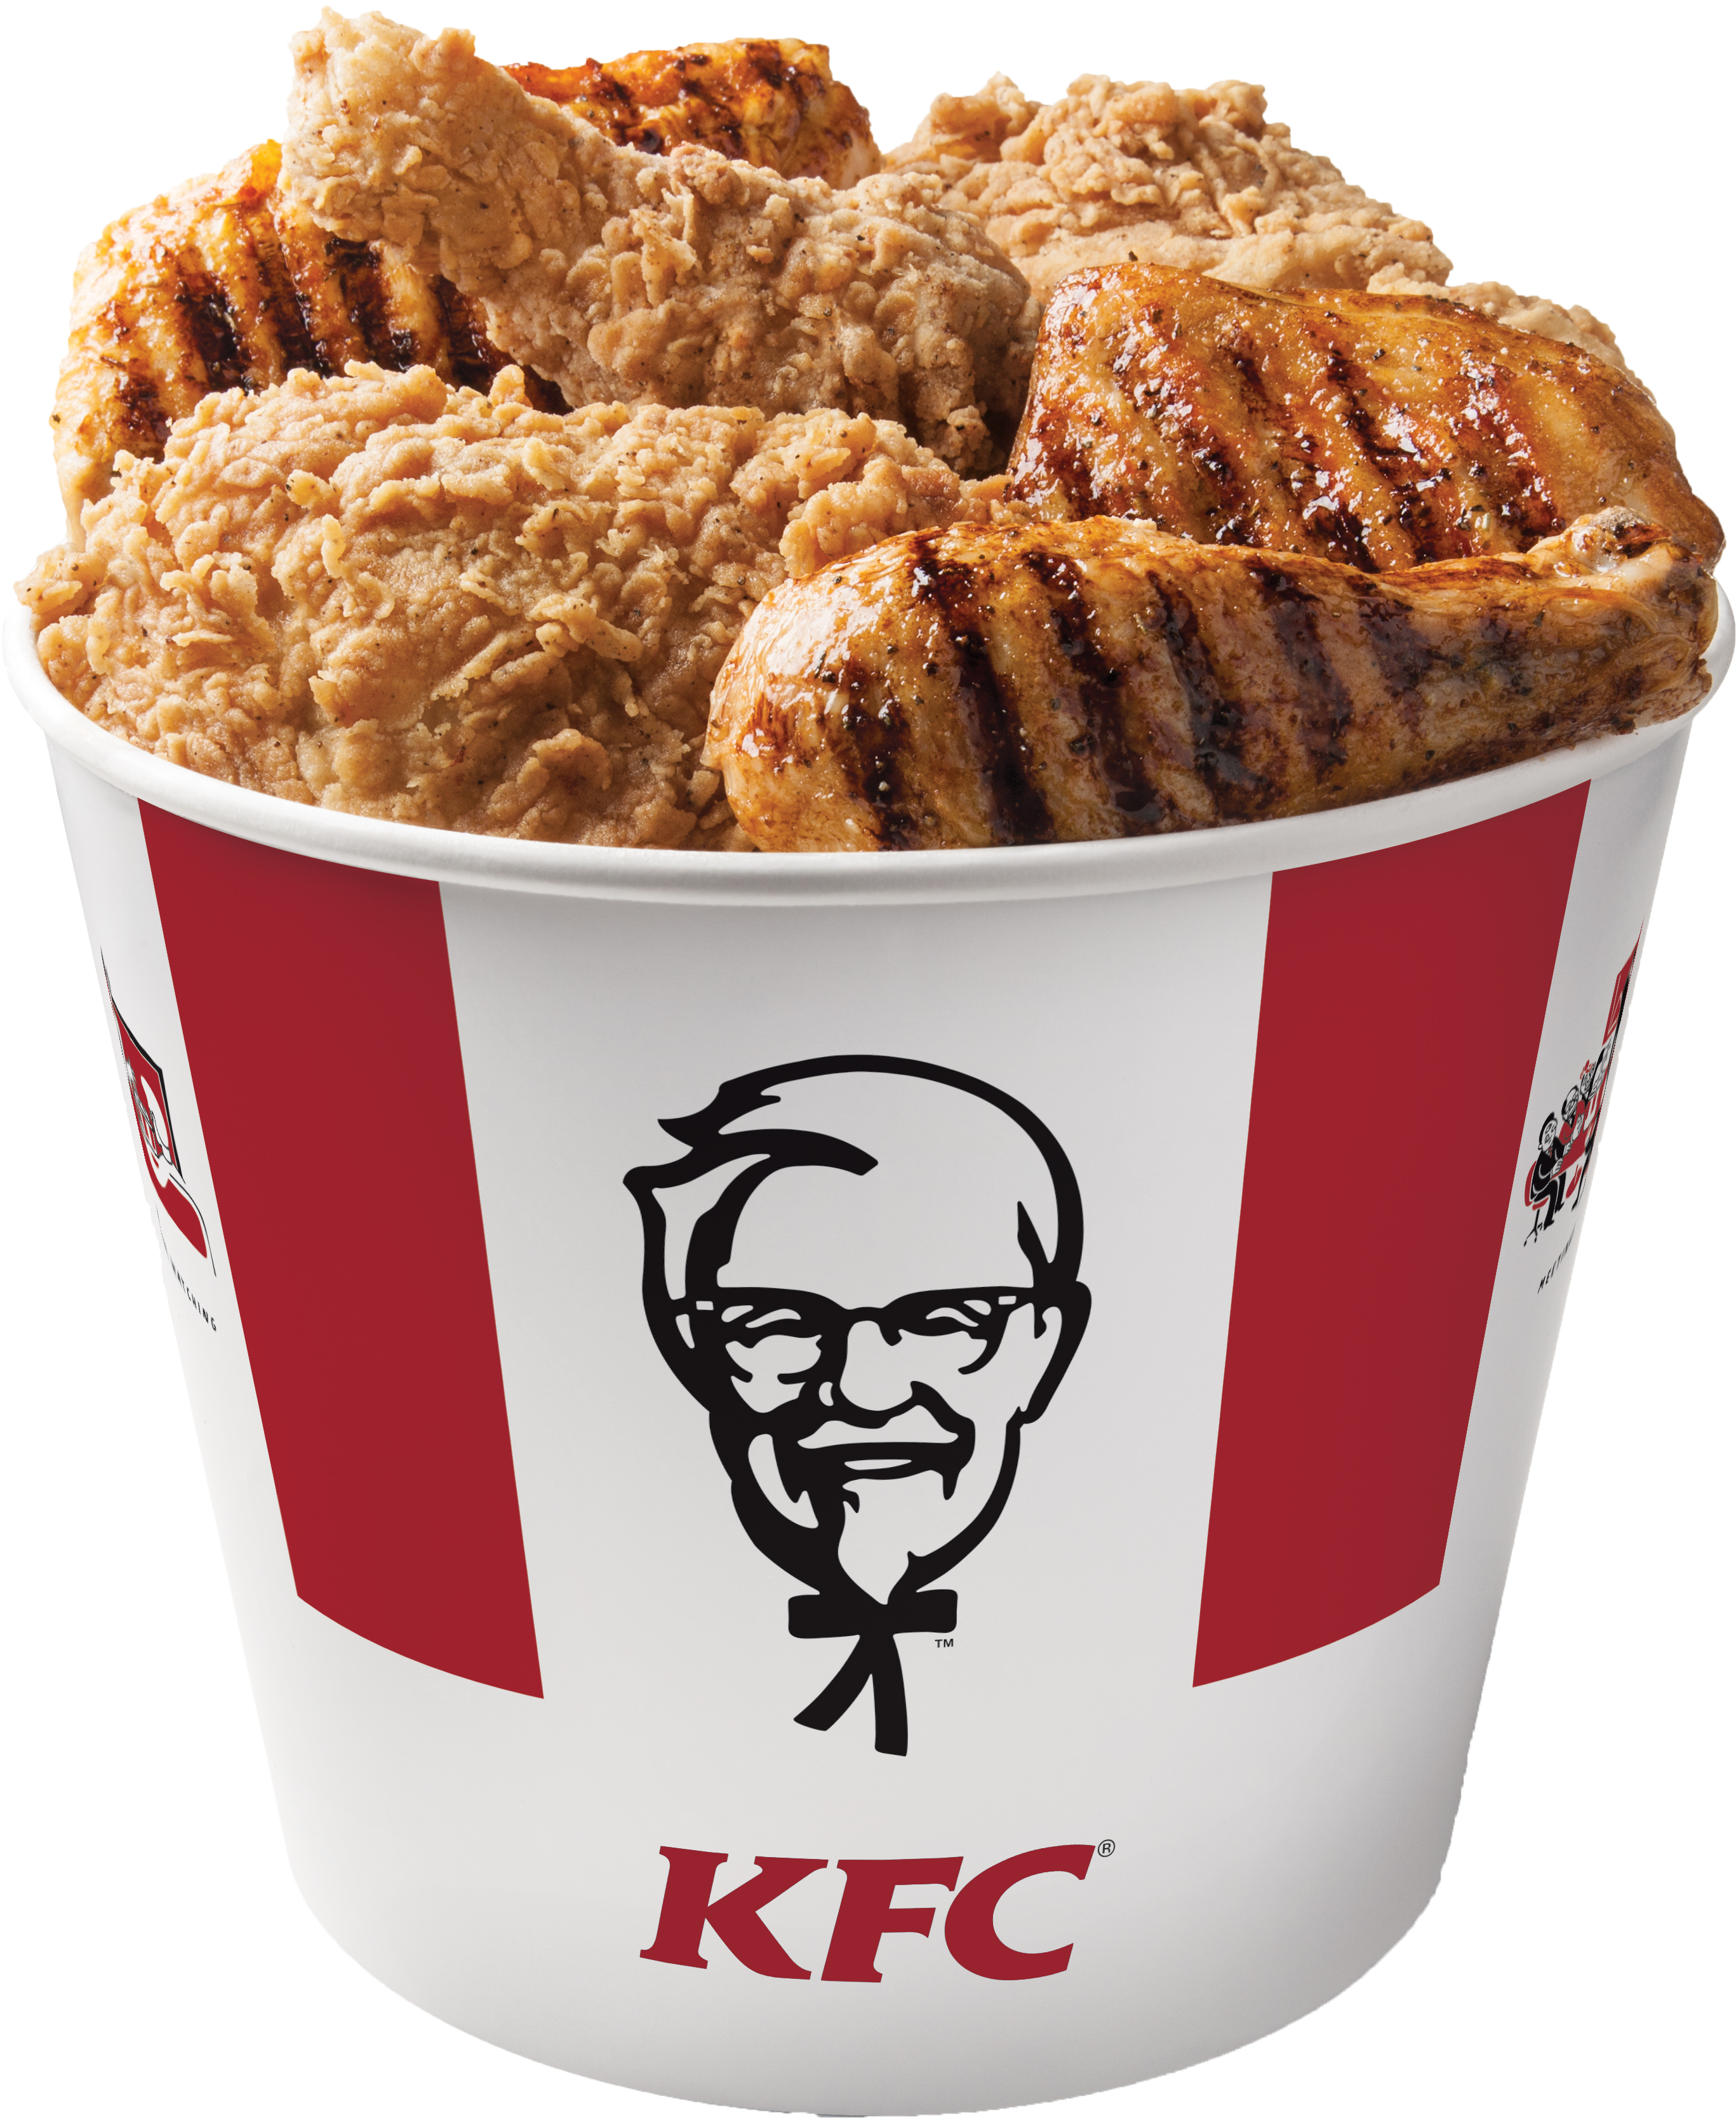 Kentucky Fried Chicken Bucket Transparent Images